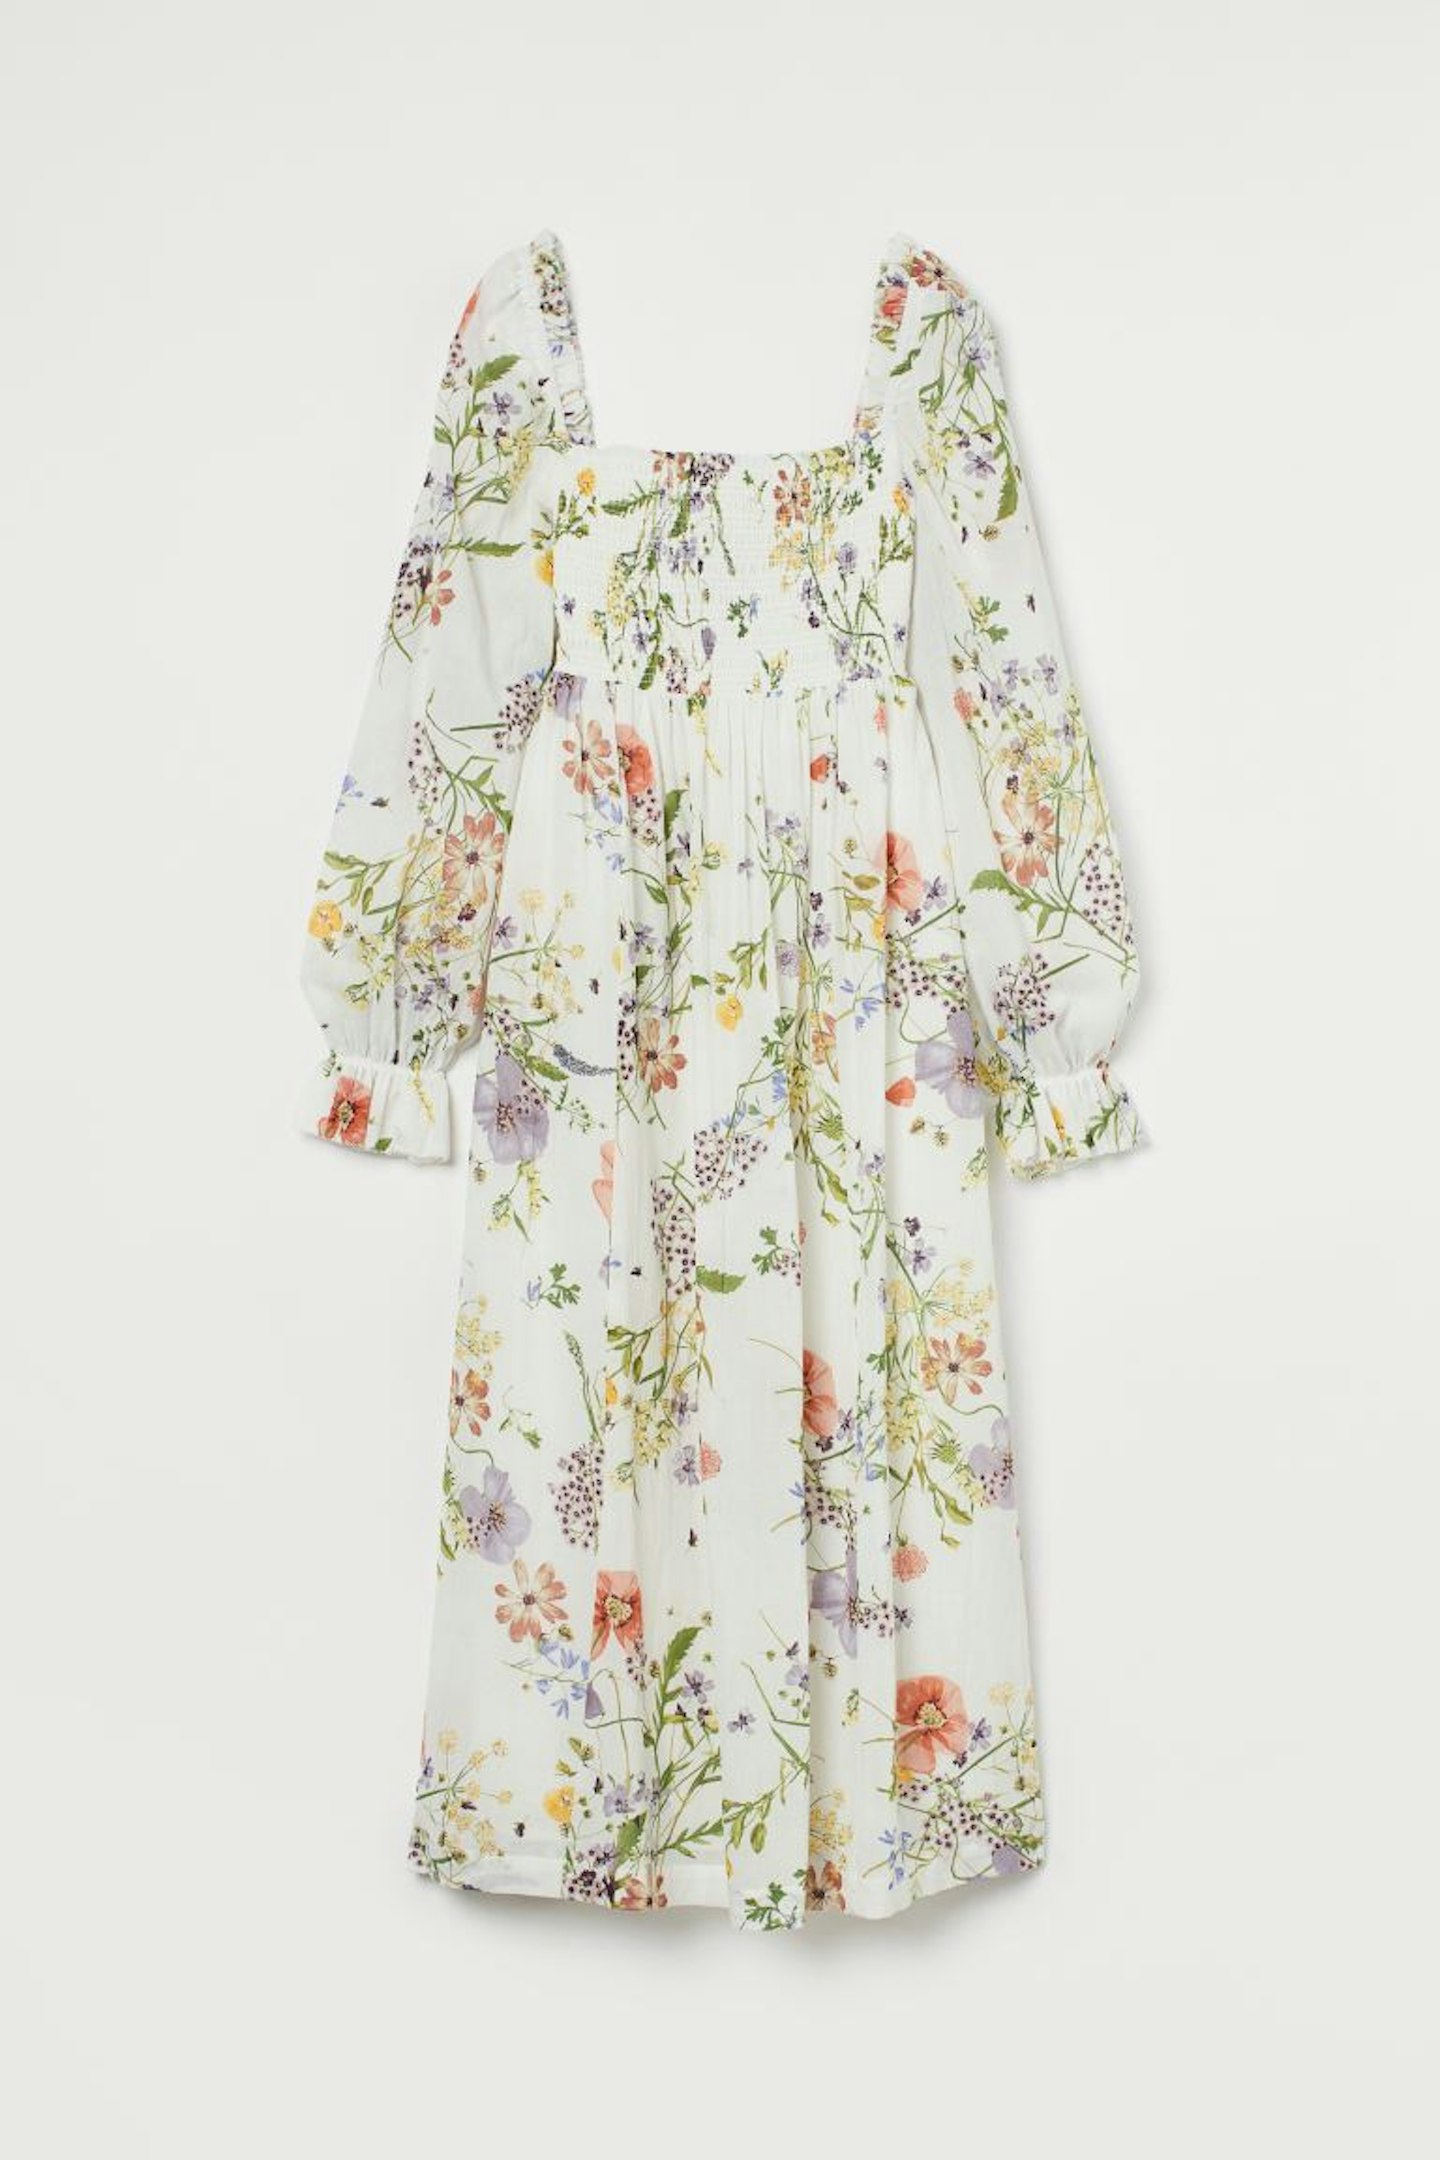 Smocking-Detail Dress, £34.99